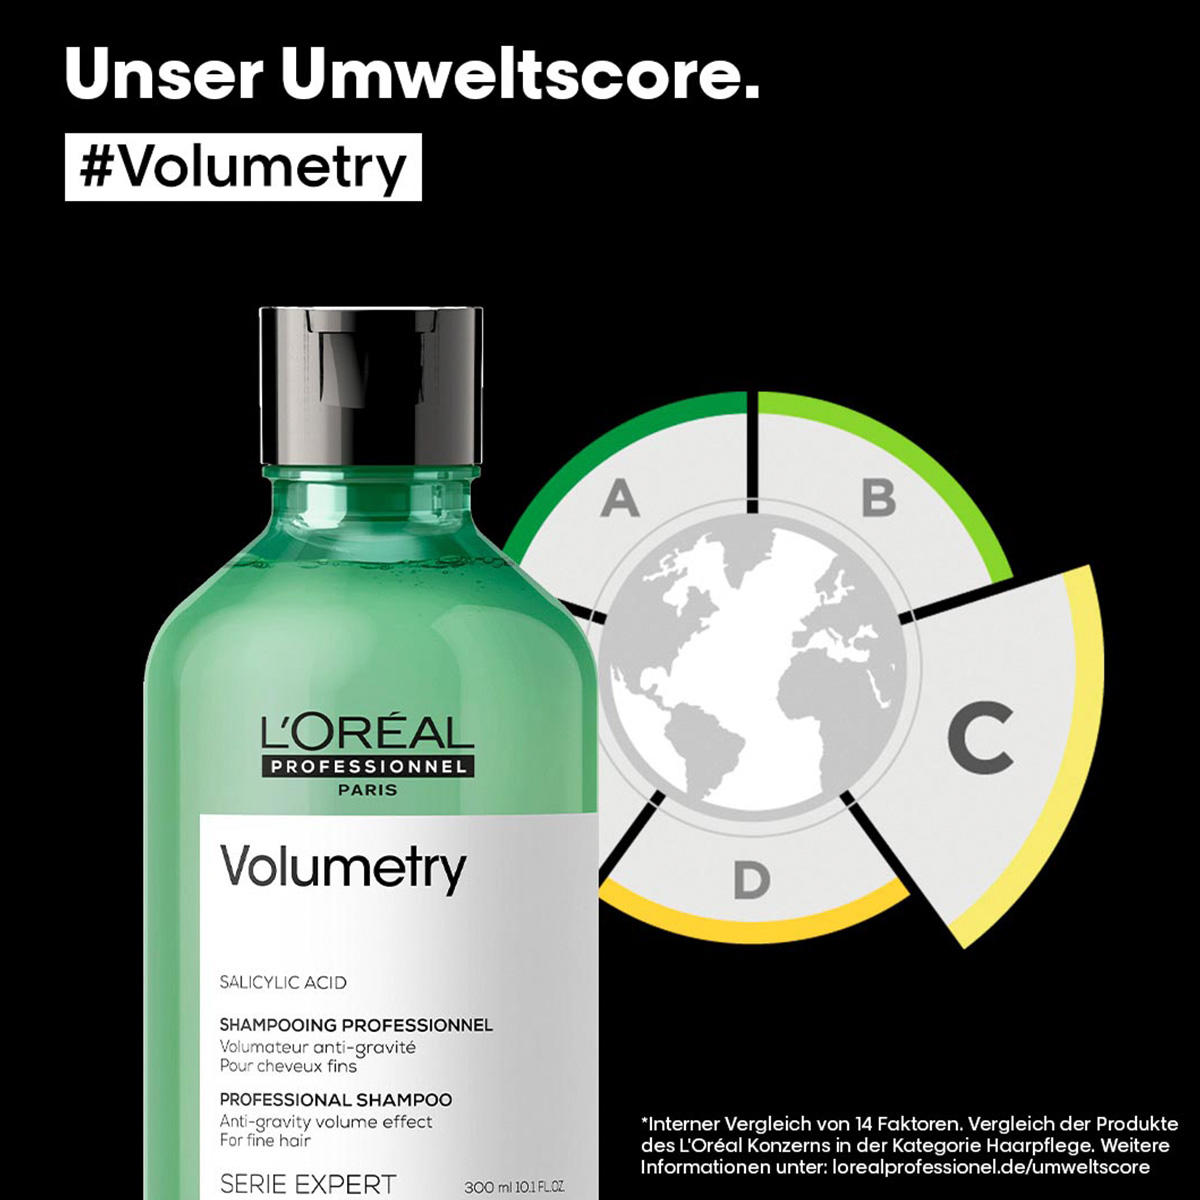 L'Oréal Professionnel Paris Serie Expert Volumetry Professional Shampoo 300 ml - 6